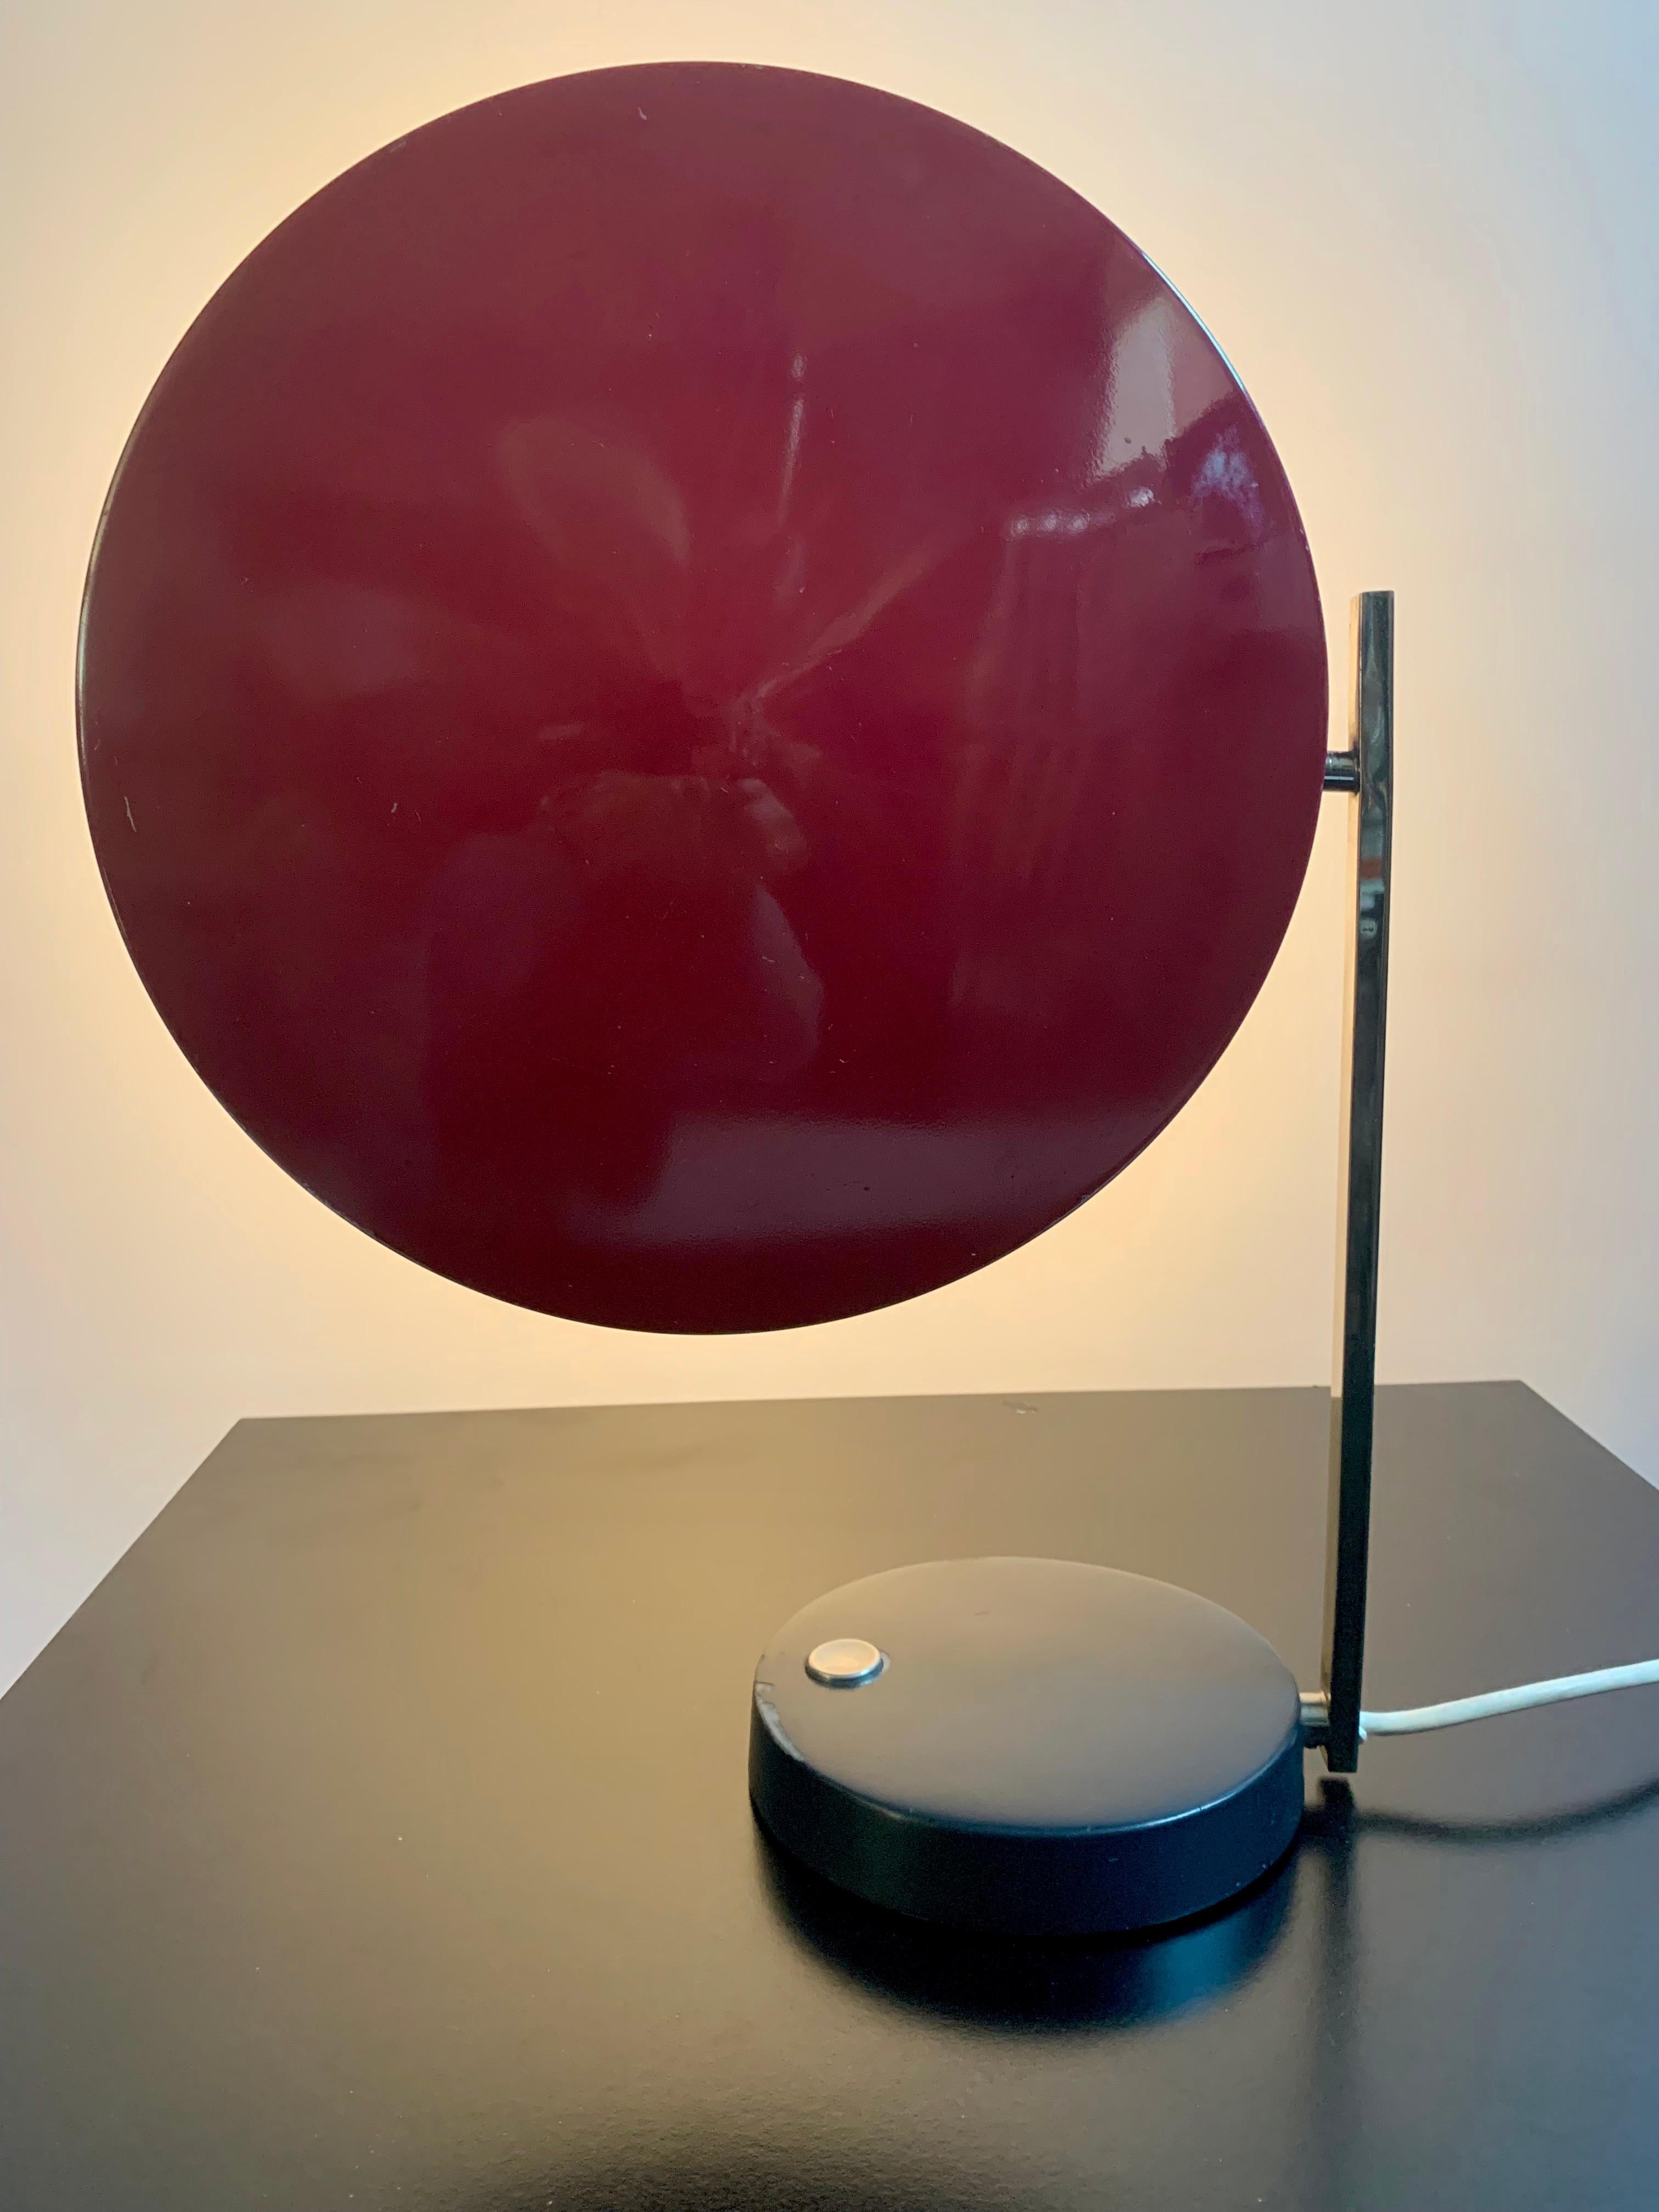 Lampe de table moderniste dans le style Bauhaus par Heinz Pfaender pour Hillebrand Leuchten en 1961.
 
Superbe combinaison de couleurs (d'origine) : noir, chrome et rouge. L'abat-jour en métal peut être tourné de l'horizontale à la verticale. En